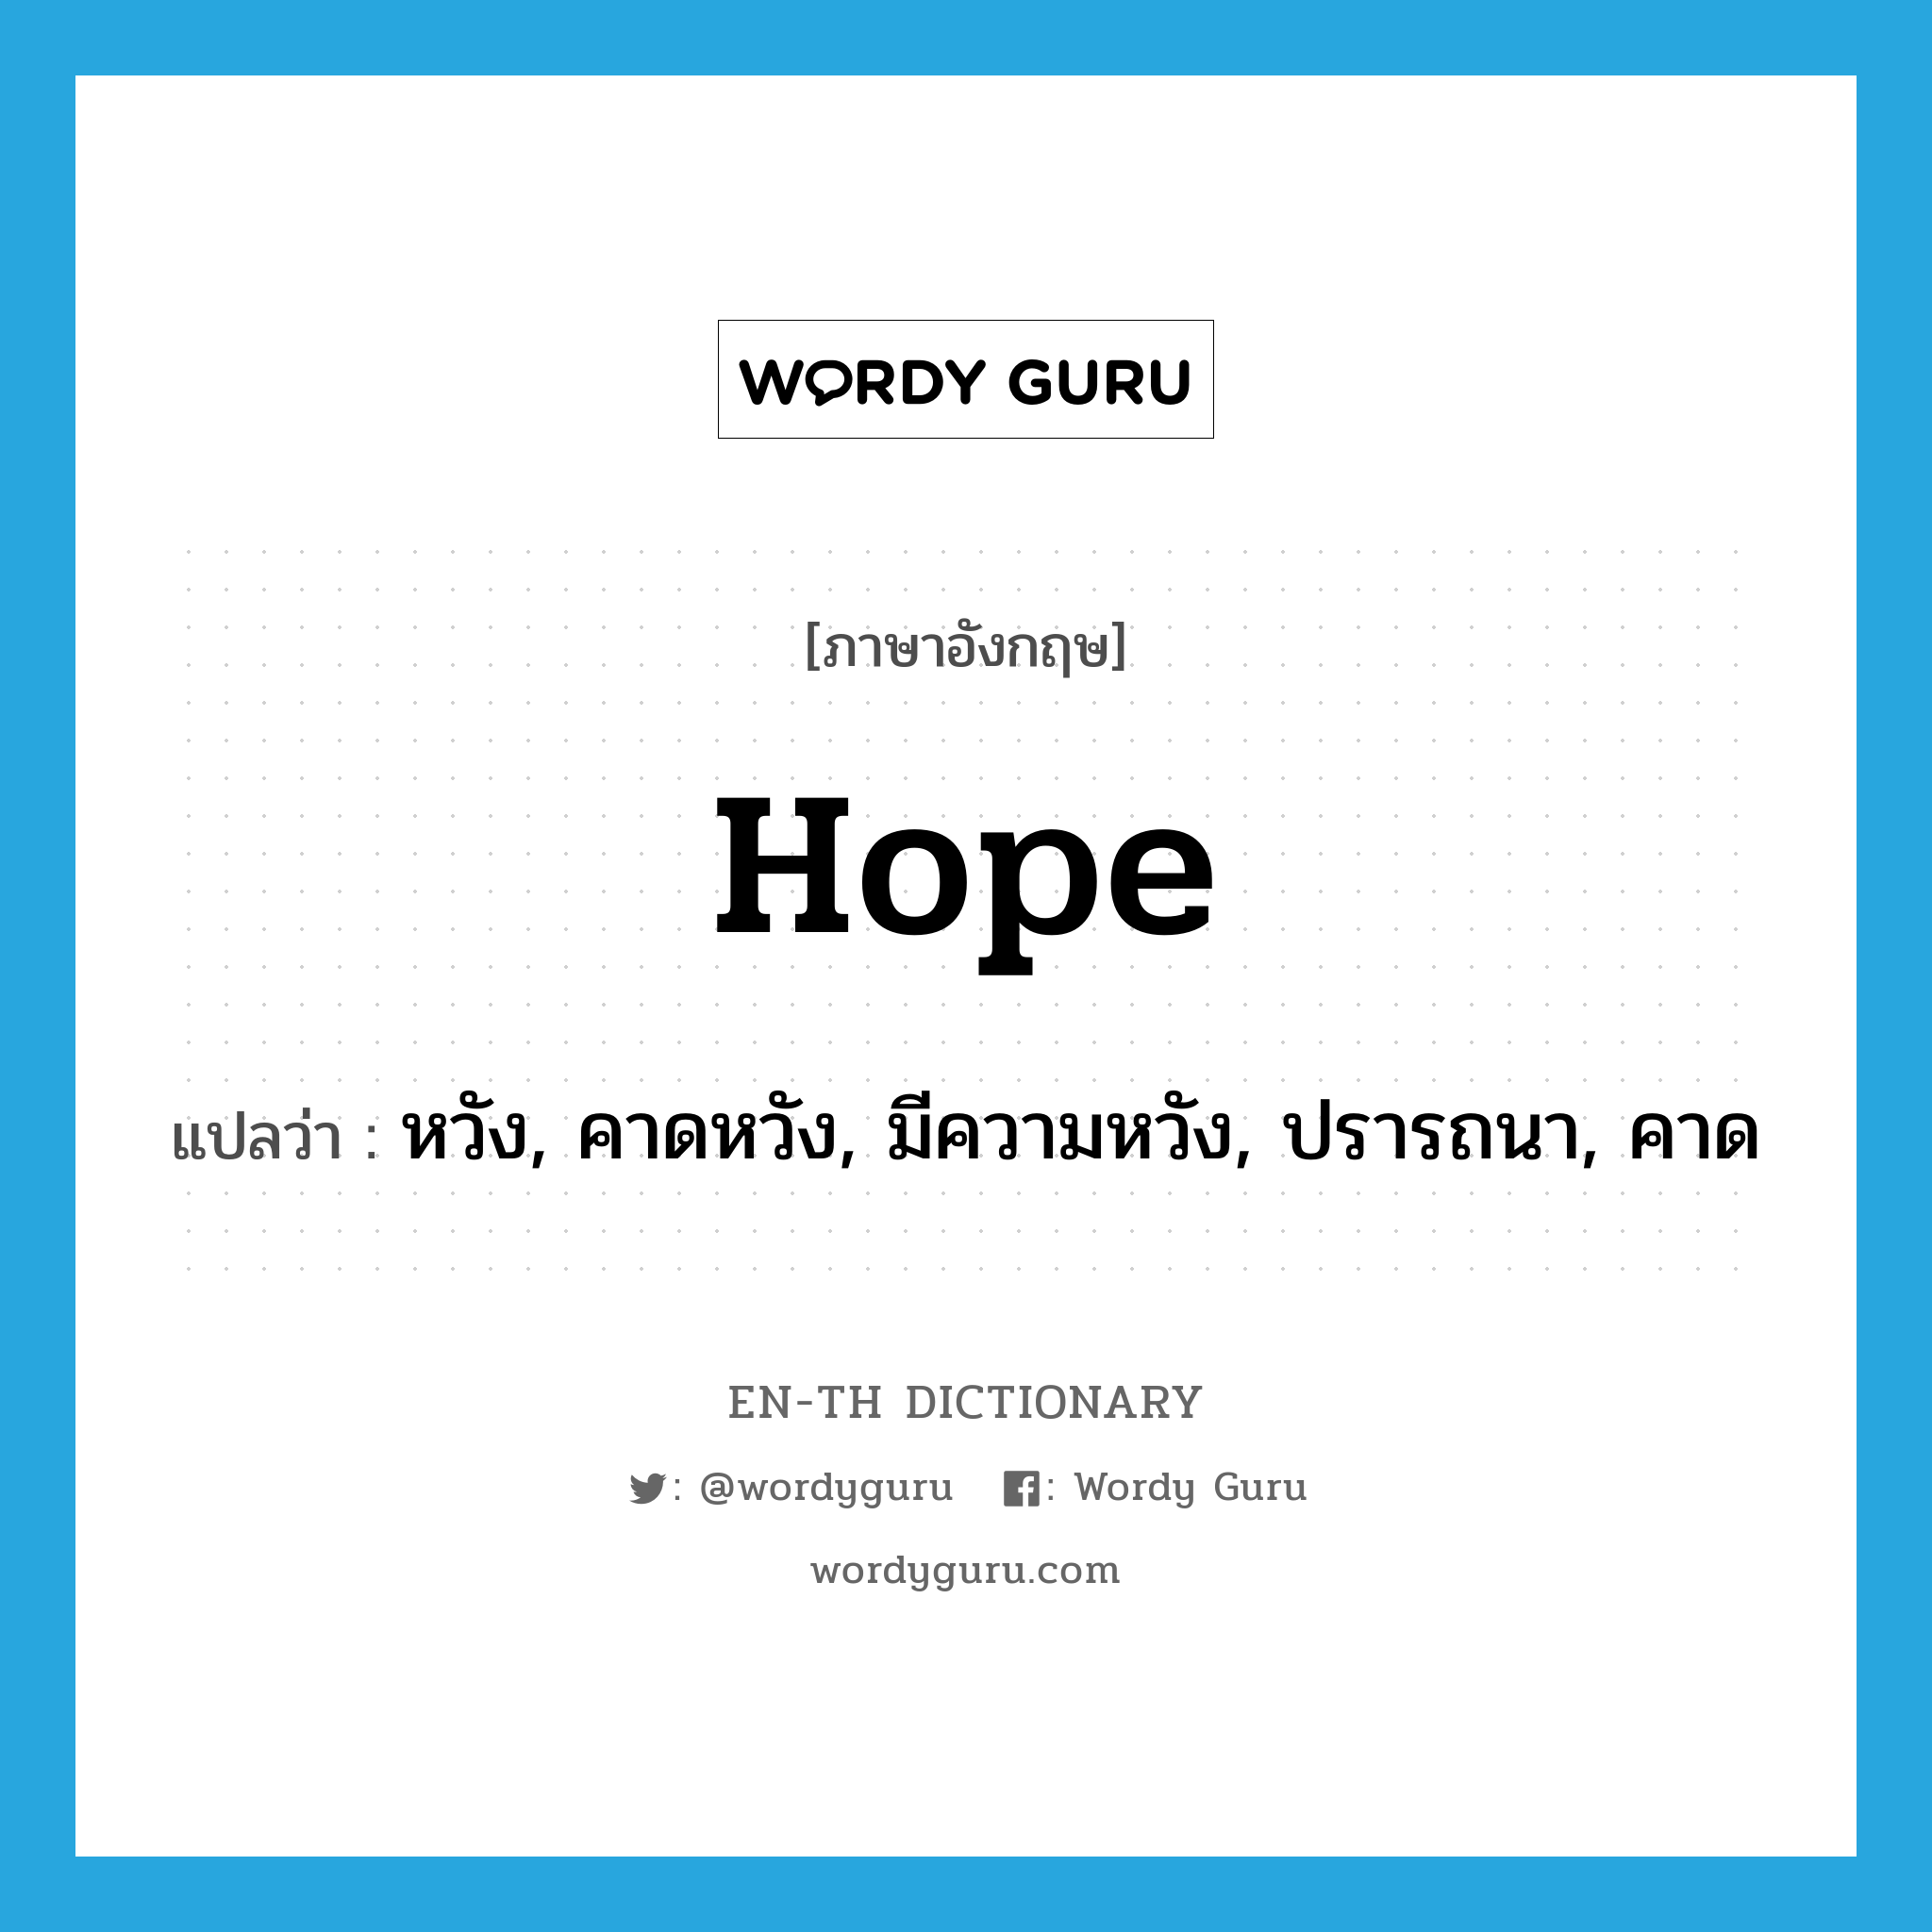 หวัง, คาดหวัง, มีความหวัง, ปรารถนา, คาด ภาษาอังกฤษ?, คำศัพท์ภาษาอังกฤษ หวัง, คาดหวัง, มีความหวัง, ปรารถนา, คาด แปลว่า hope ประเภท VI หมวด VI